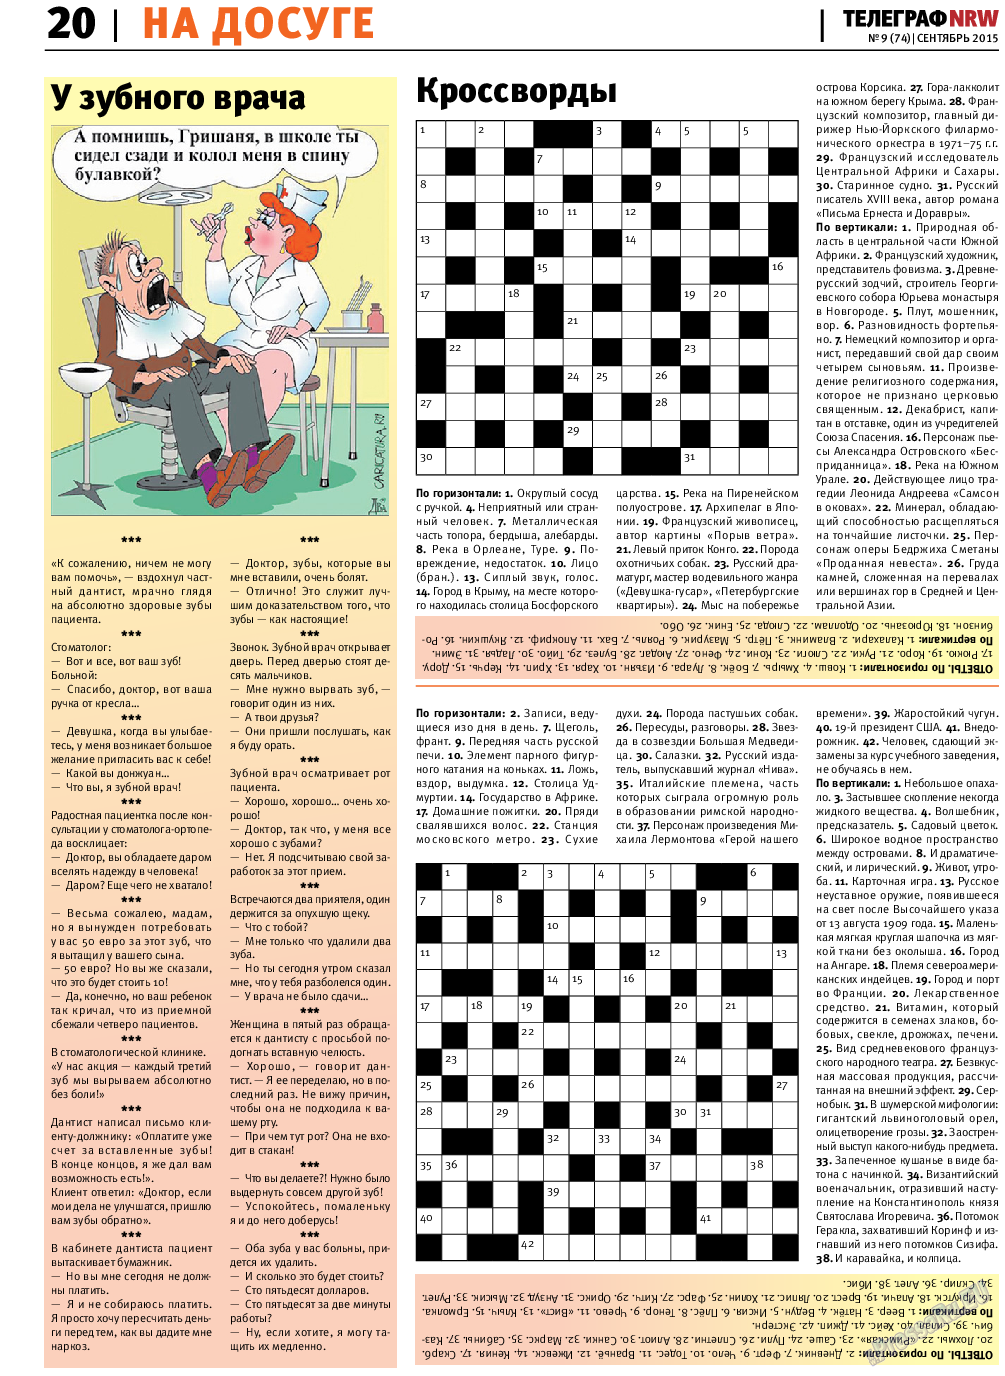 Телеграф NRW (газета). 2015 год, номер 9, стр. 20